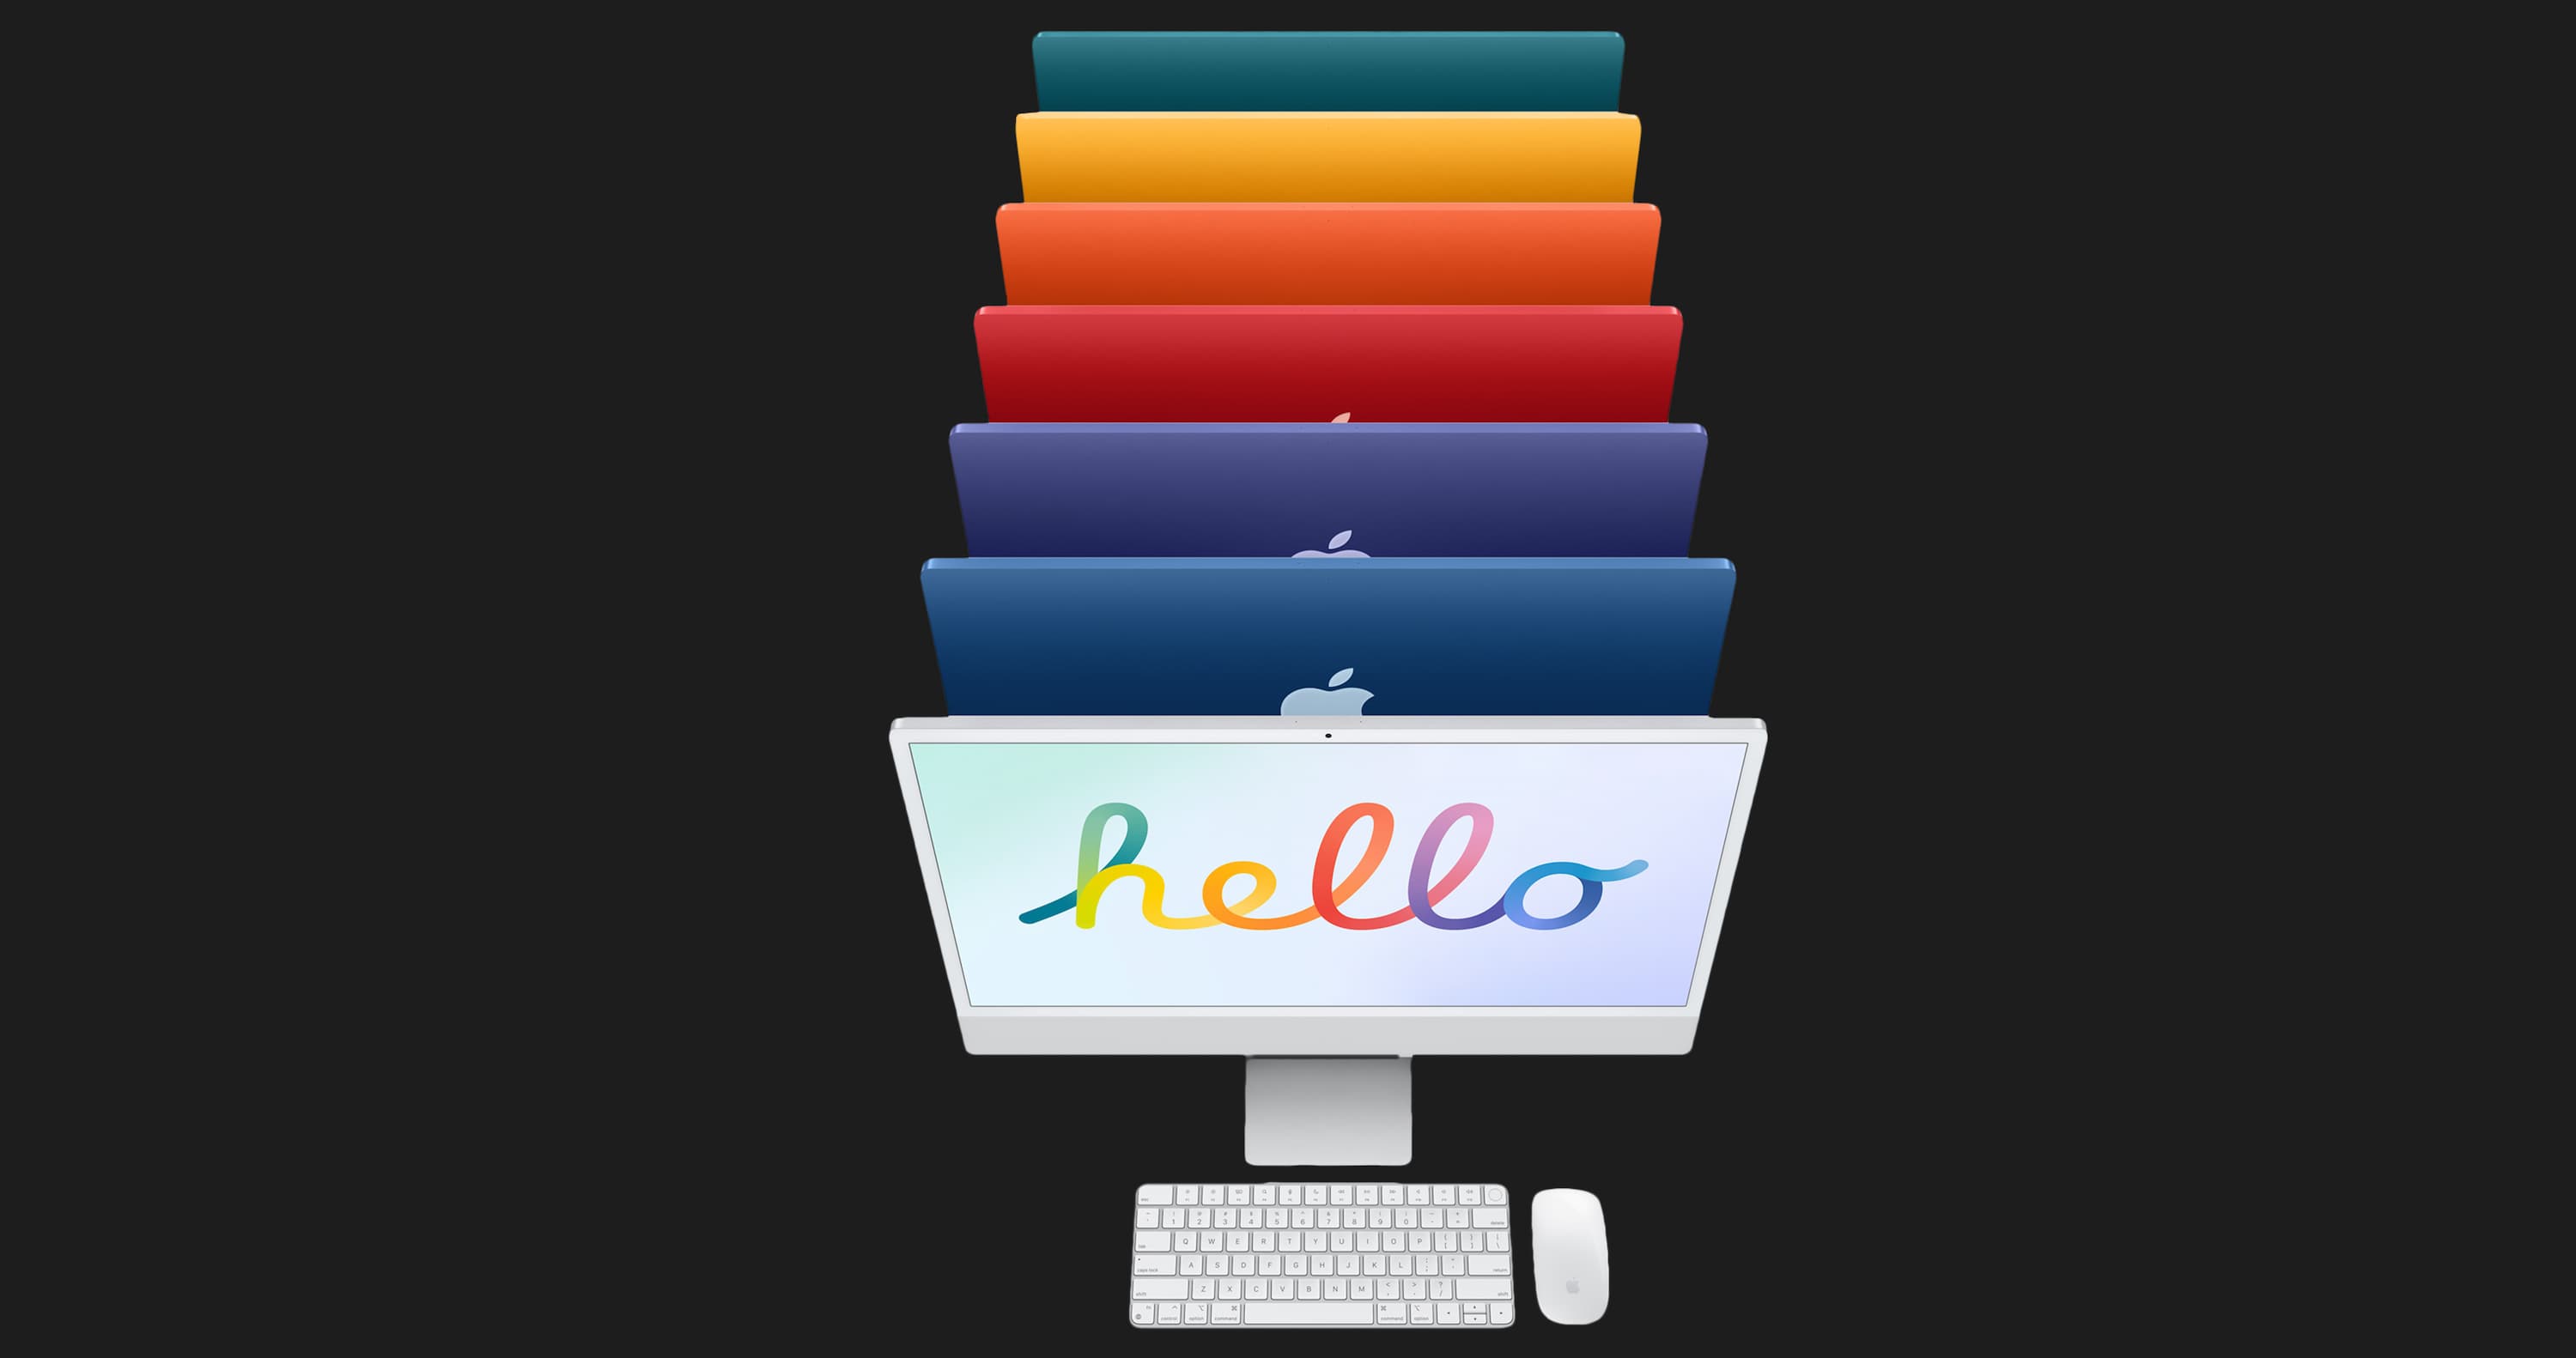 Apple iMac 24 with Retina 4.5K, 256GB, 8 CPU / 7 GPU (Blue) (Z14M000UN)